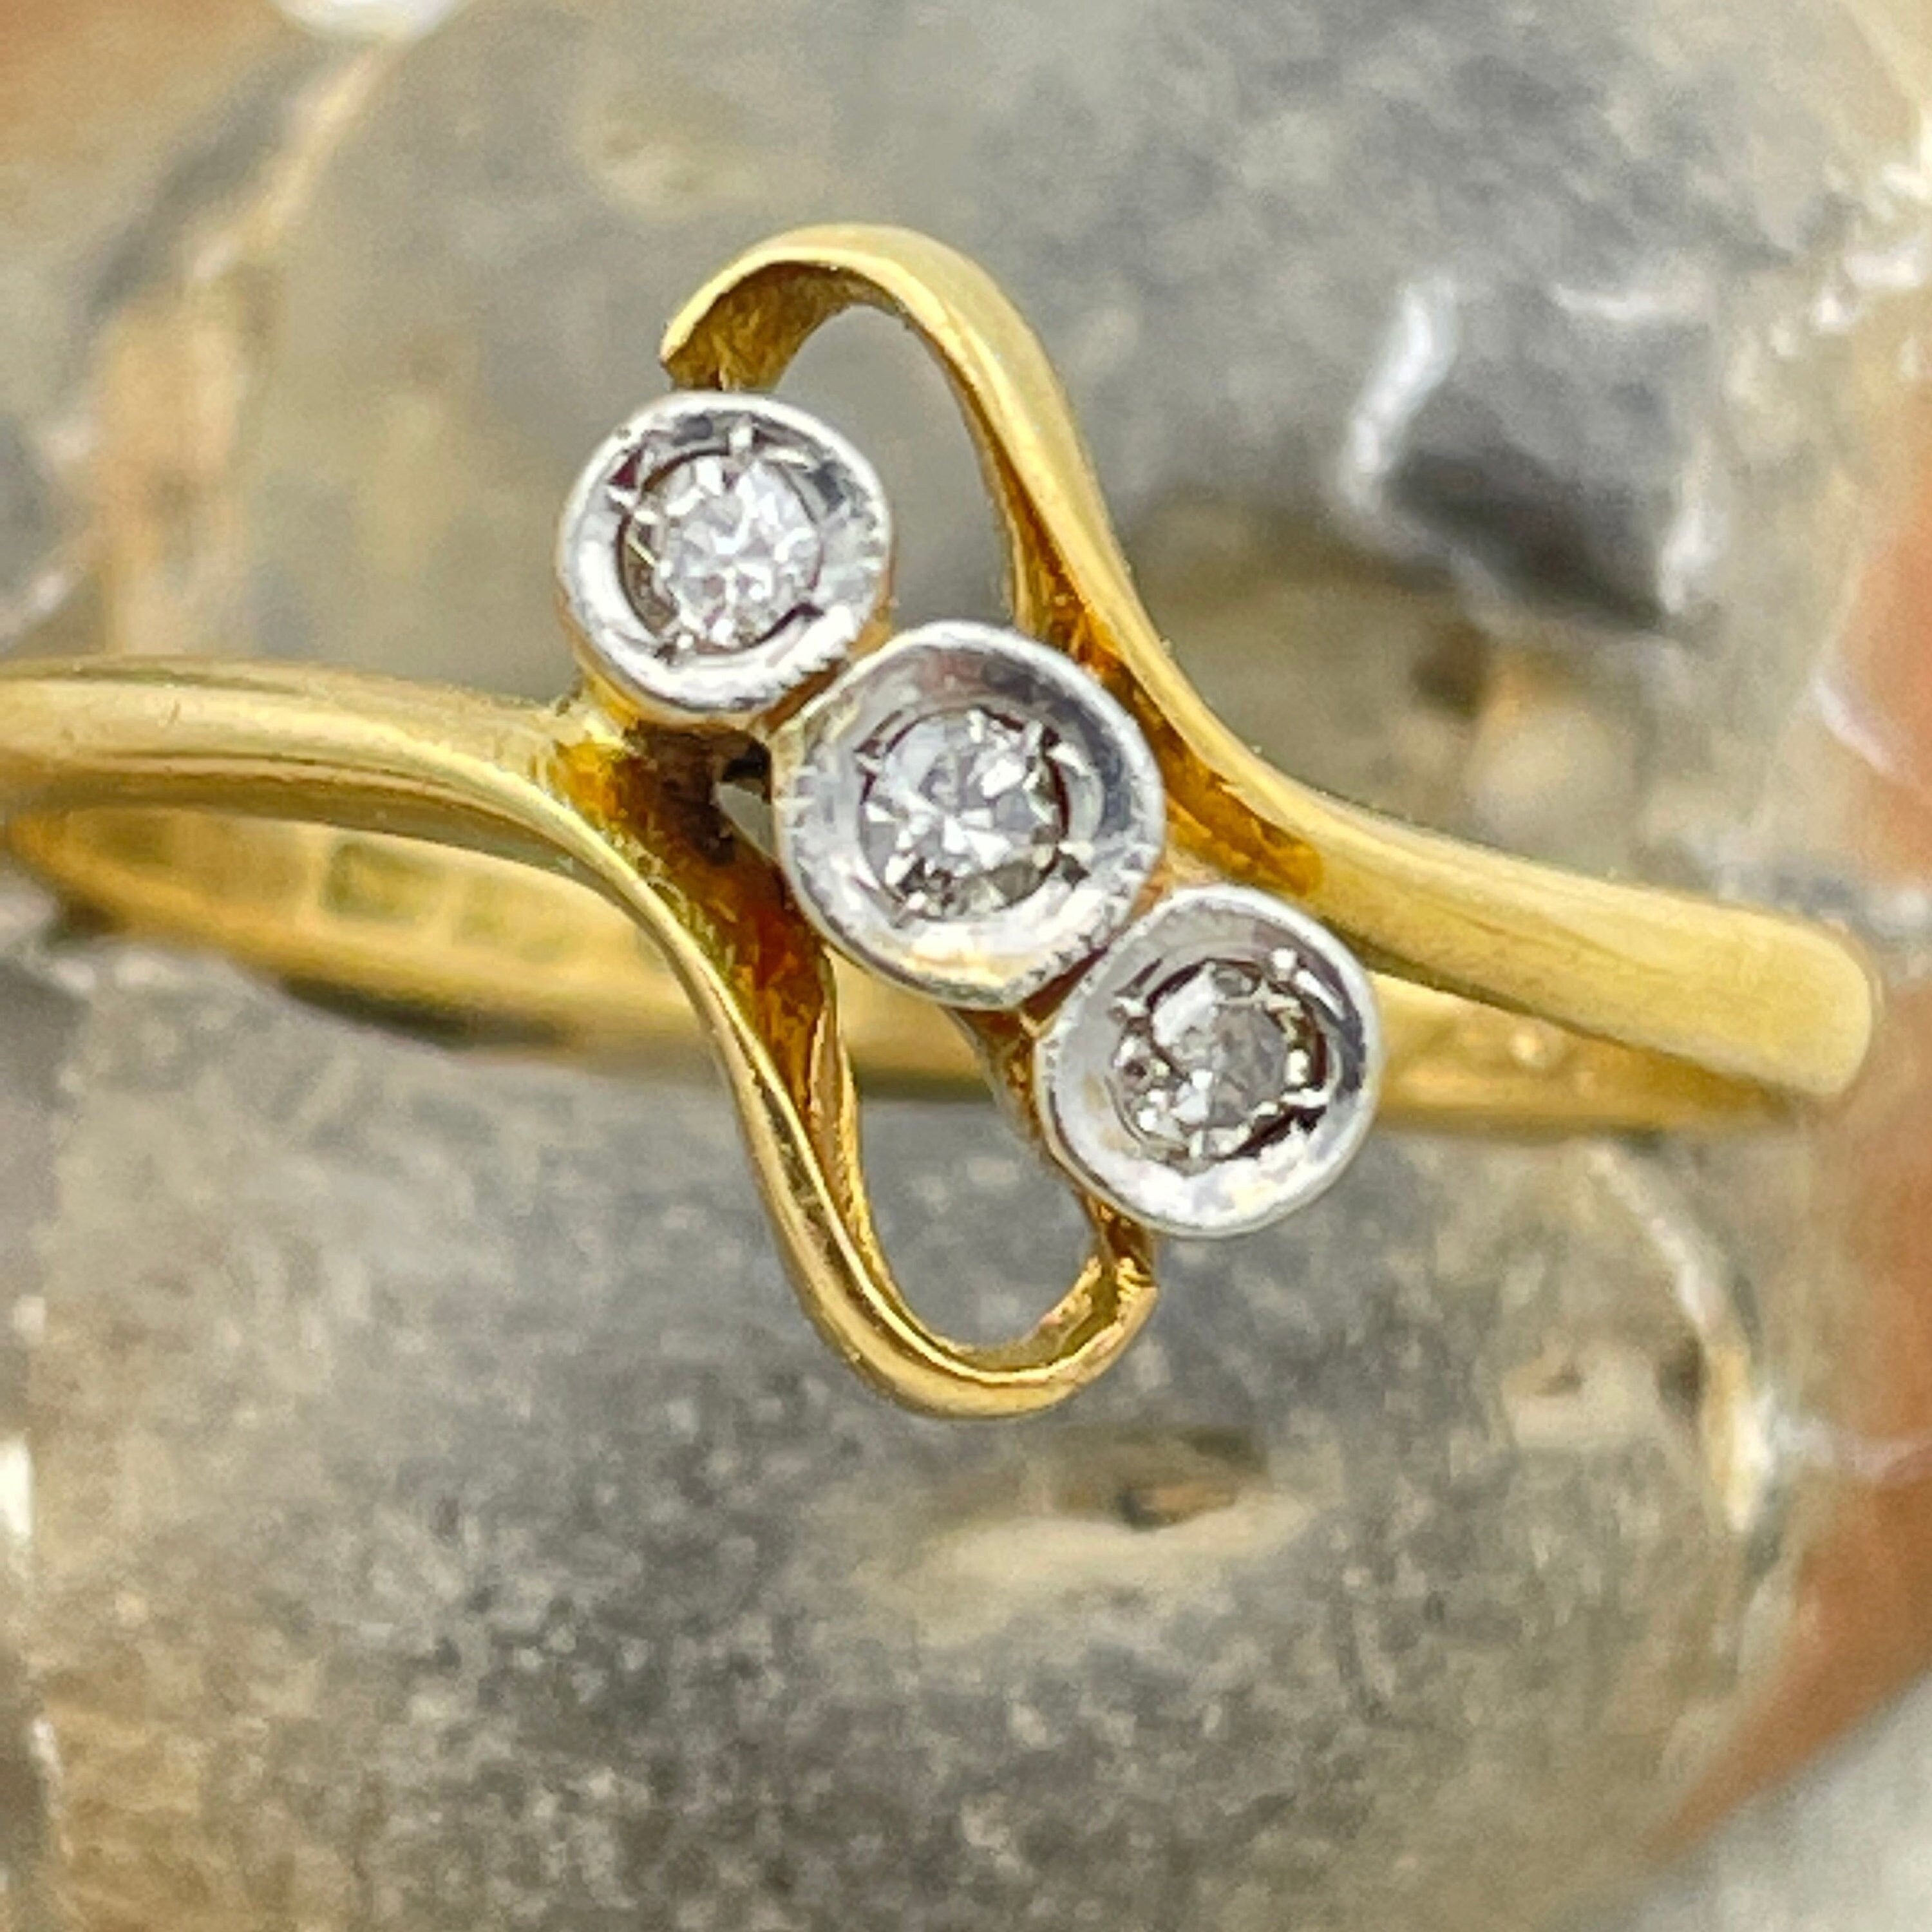 Antique 18ct gold, platinum & diamond crossover trilogy ring c1910s